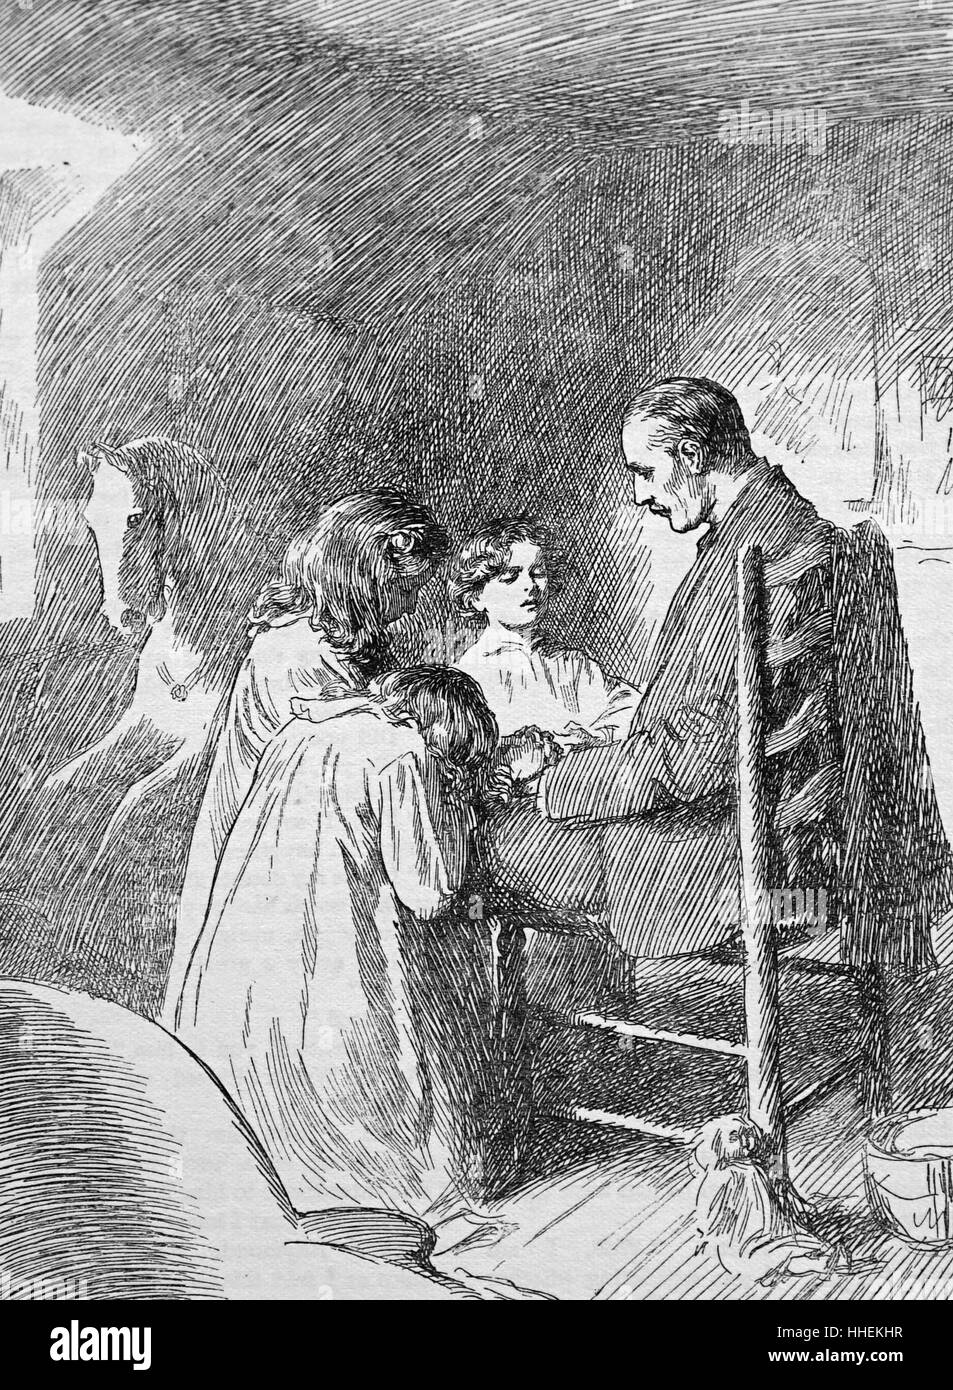 Illustrazione raffigurante un vedovo confortare i suoi figli. Illustrato da Fred Pegram (1870-1987) un prolifico Illustratore Inglese e fumettista. Datata del XIX secolo Foto Stock